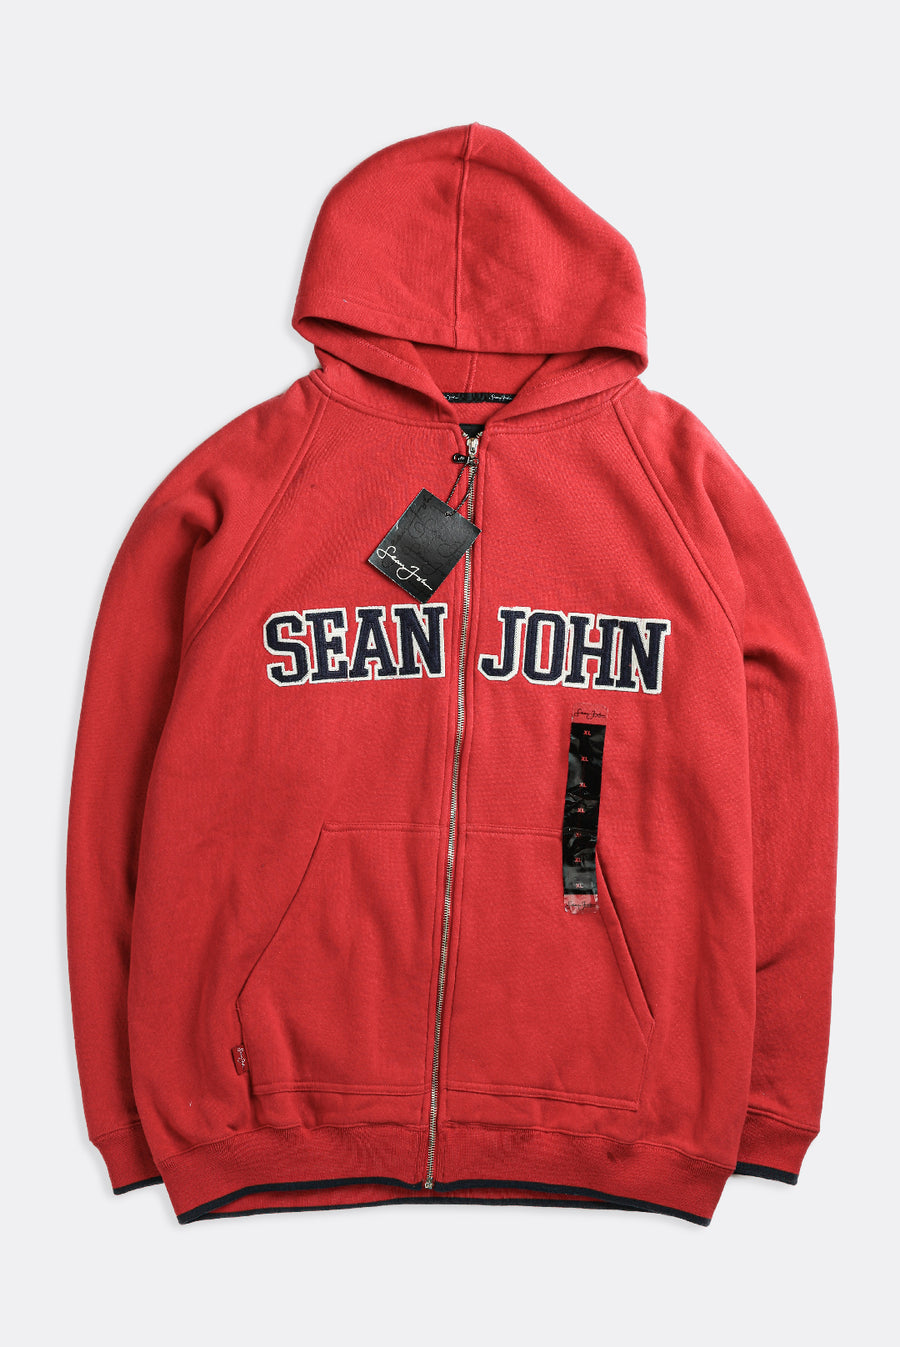 Deadstock Sean John Sweatshirt